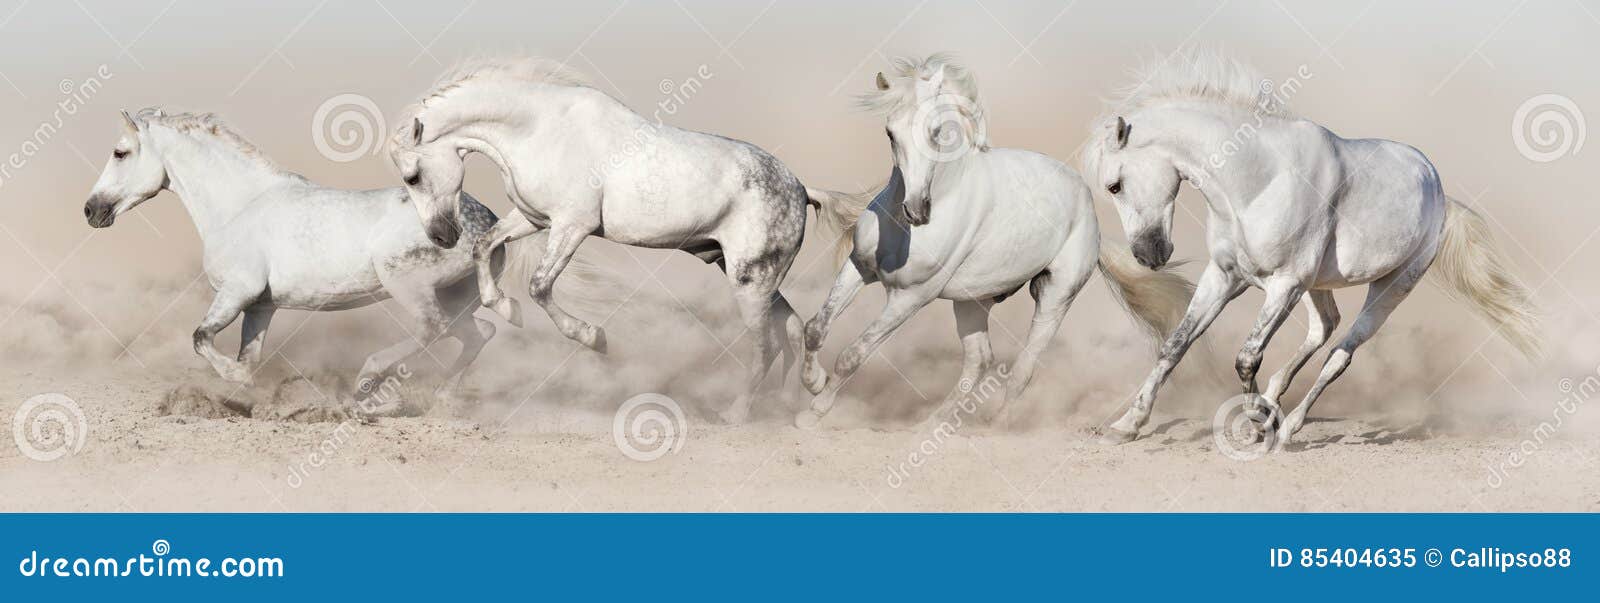 white horse herd run